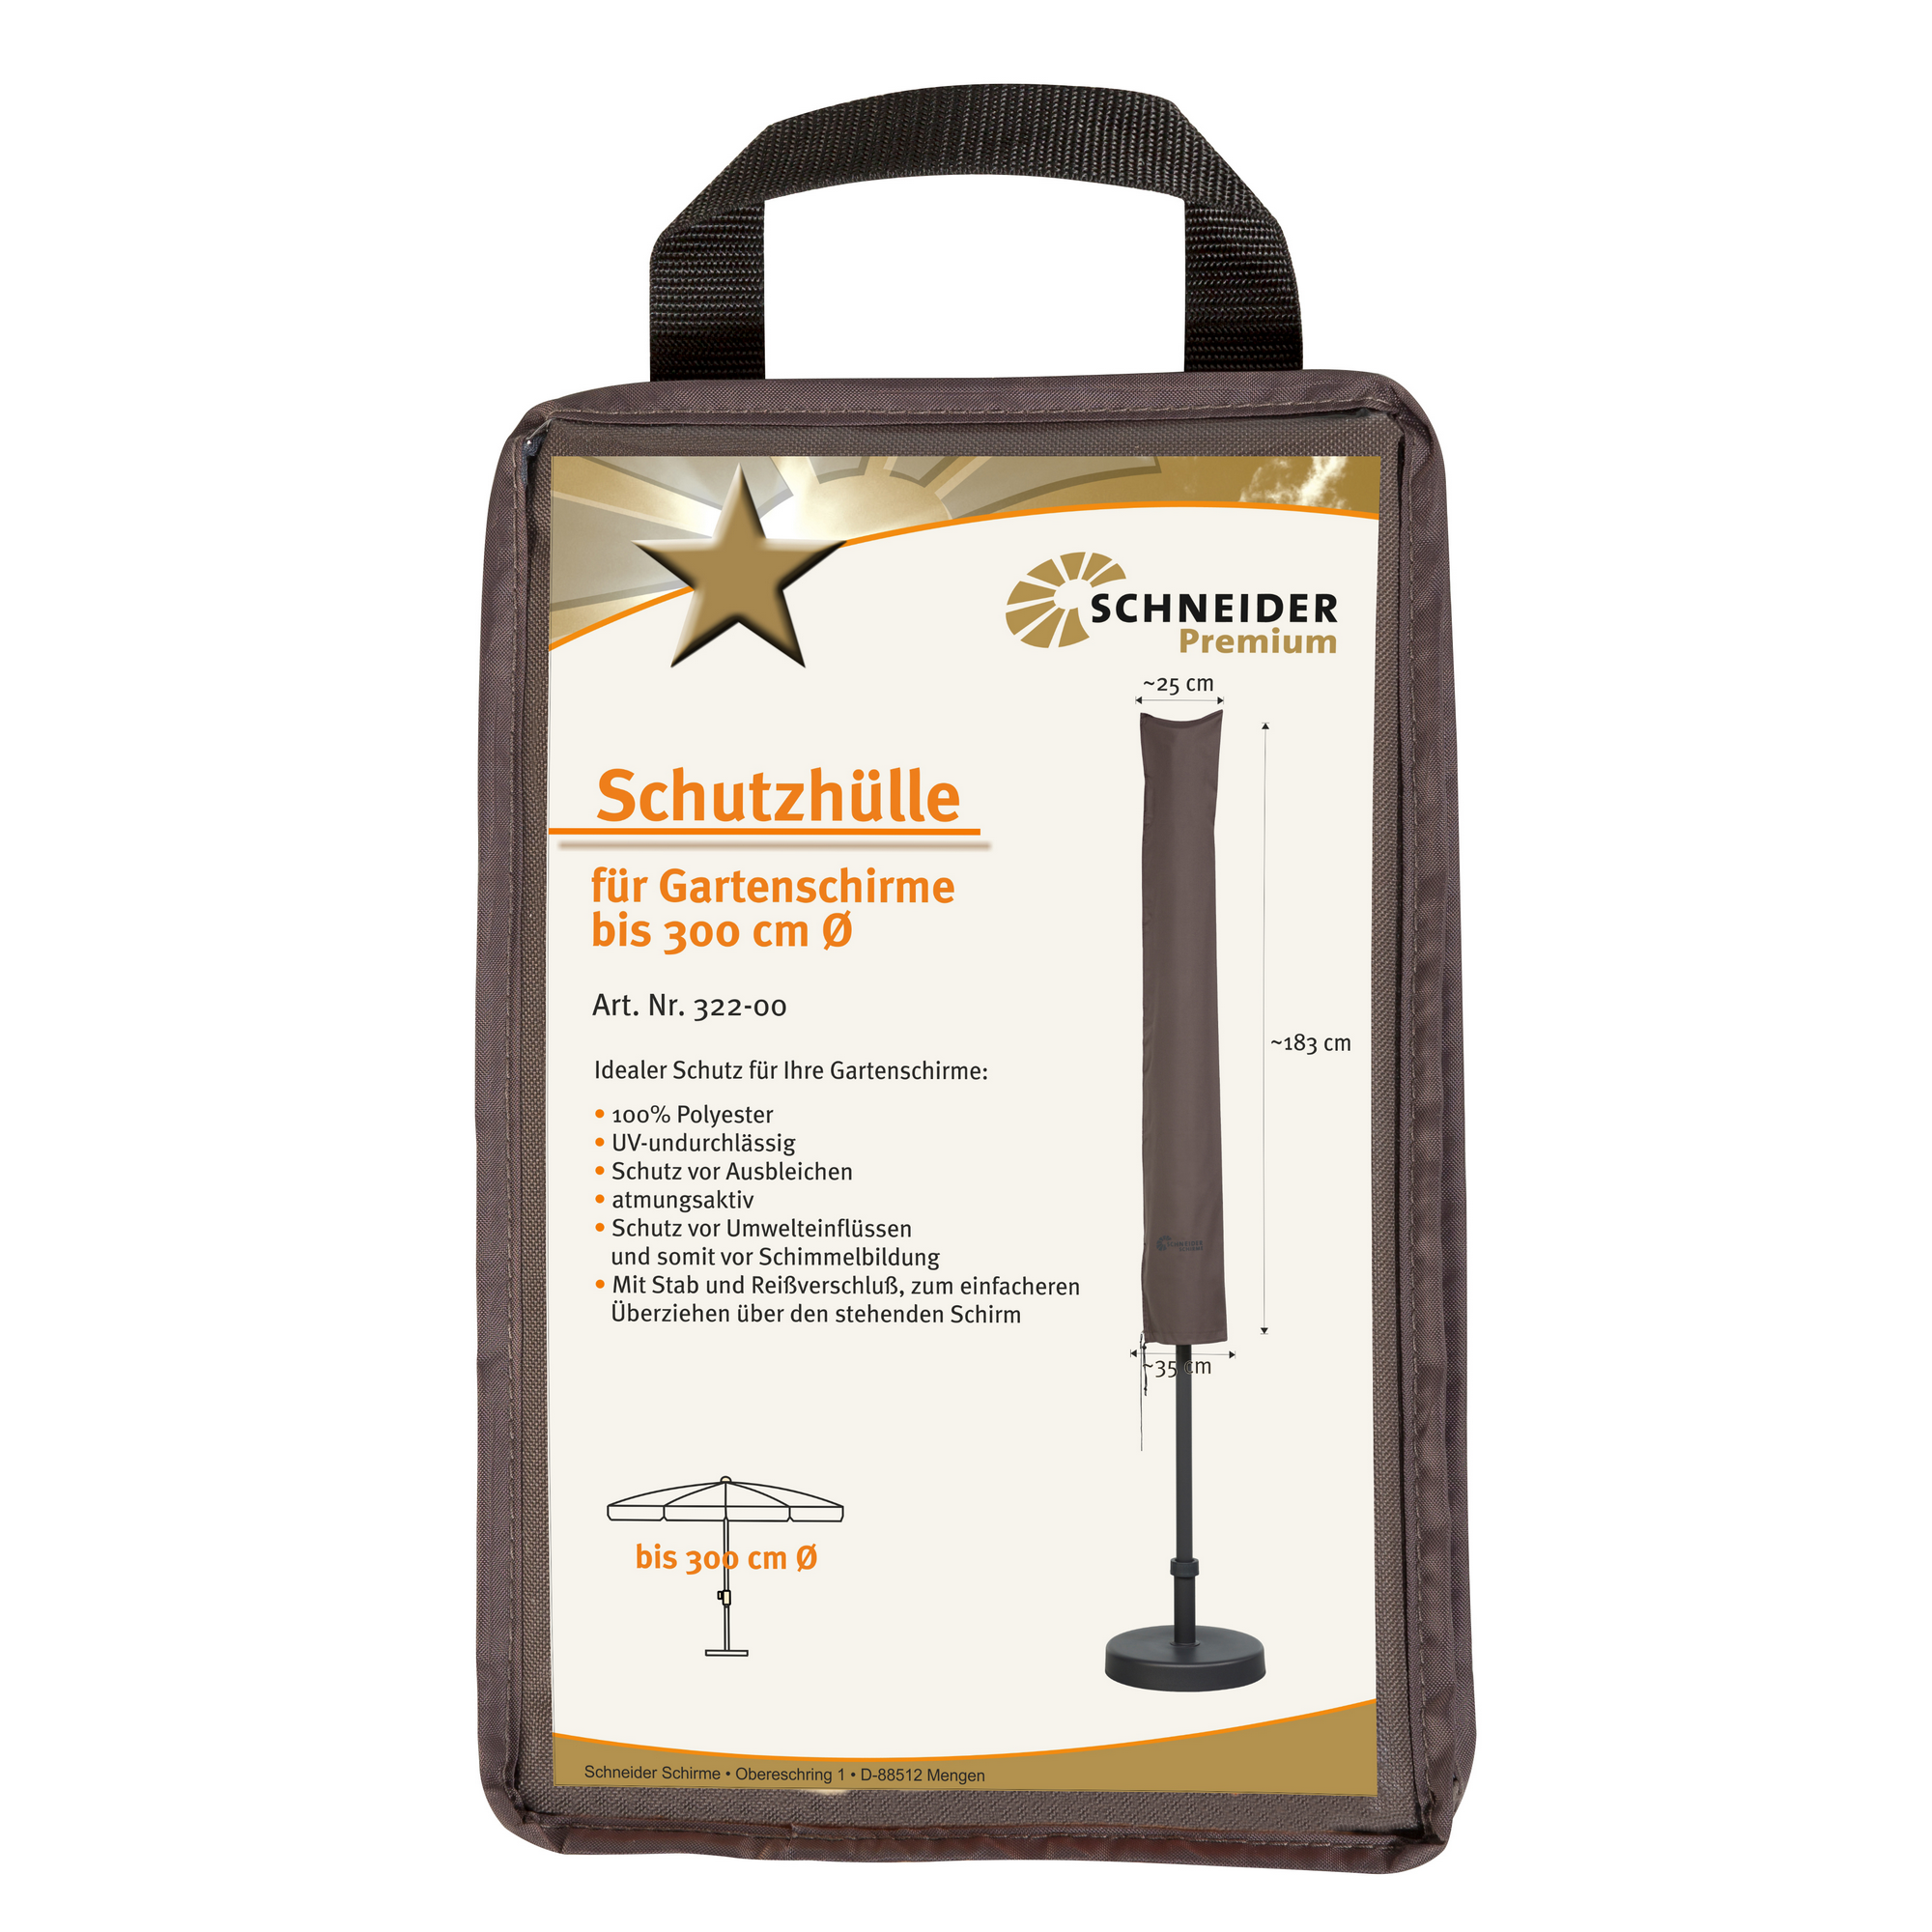 Premium-Schutzhülle für Sonnenschirme bis Ø 300 cm + product picture